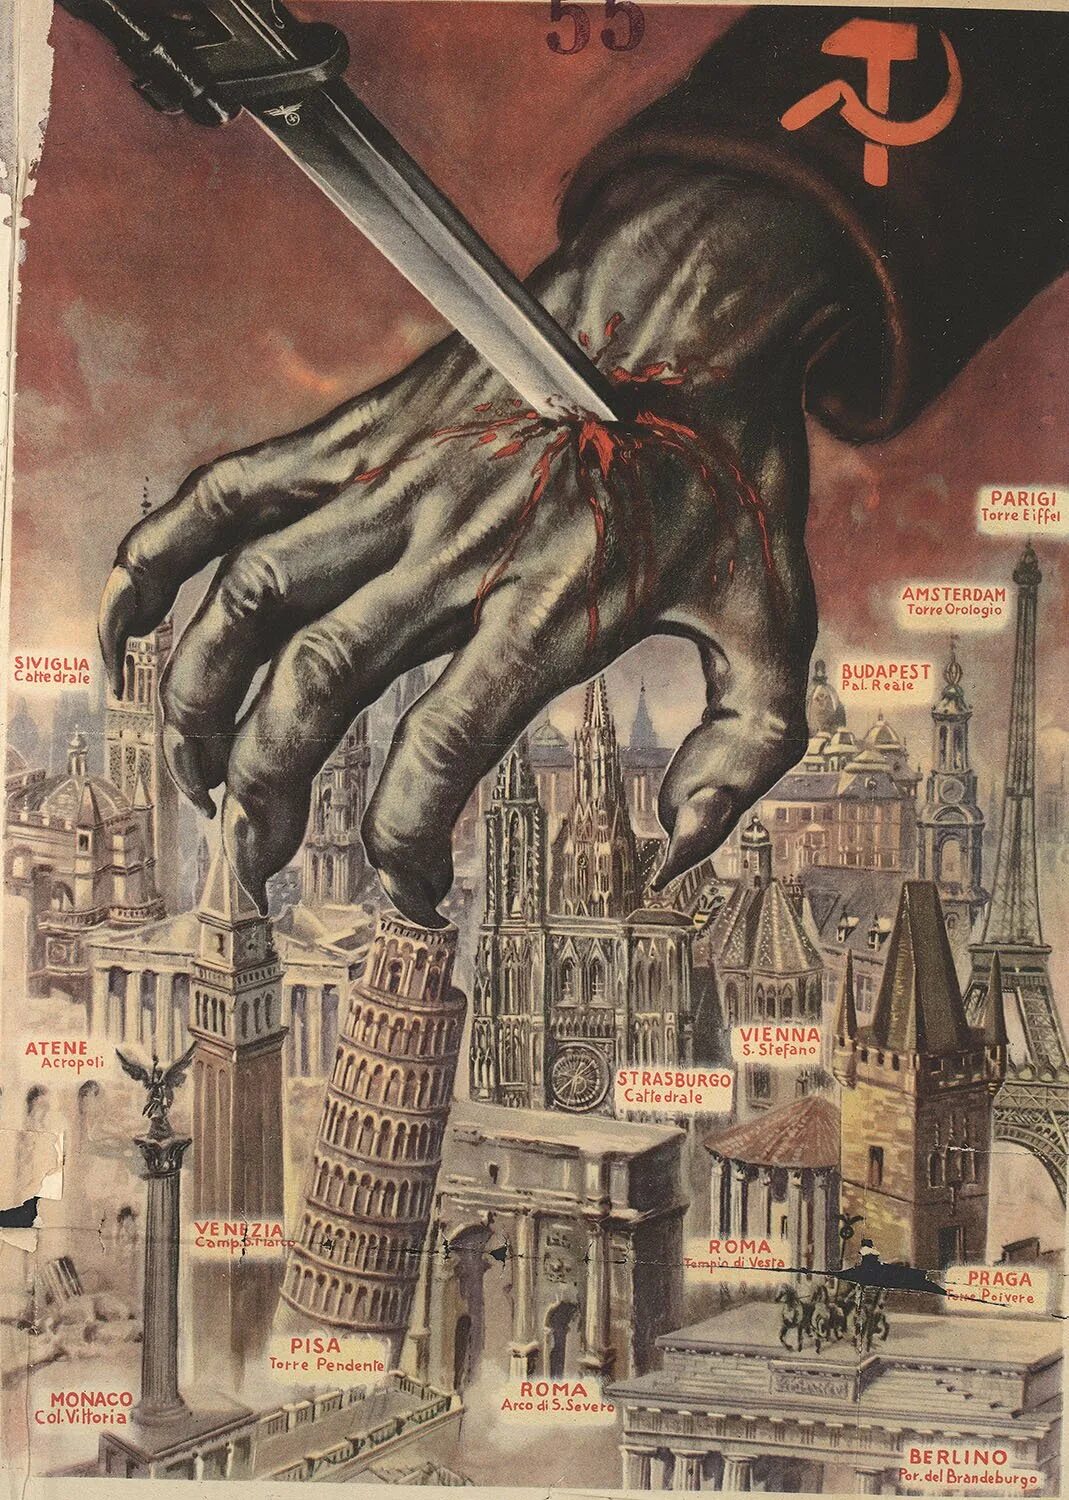 Пропаганда третьего рейха против СССР. Антисоветские плакаты 3 рейха. Антикоммунистические плакаты третьего рейха. Антисоветские плакаты в нацистской Германии.